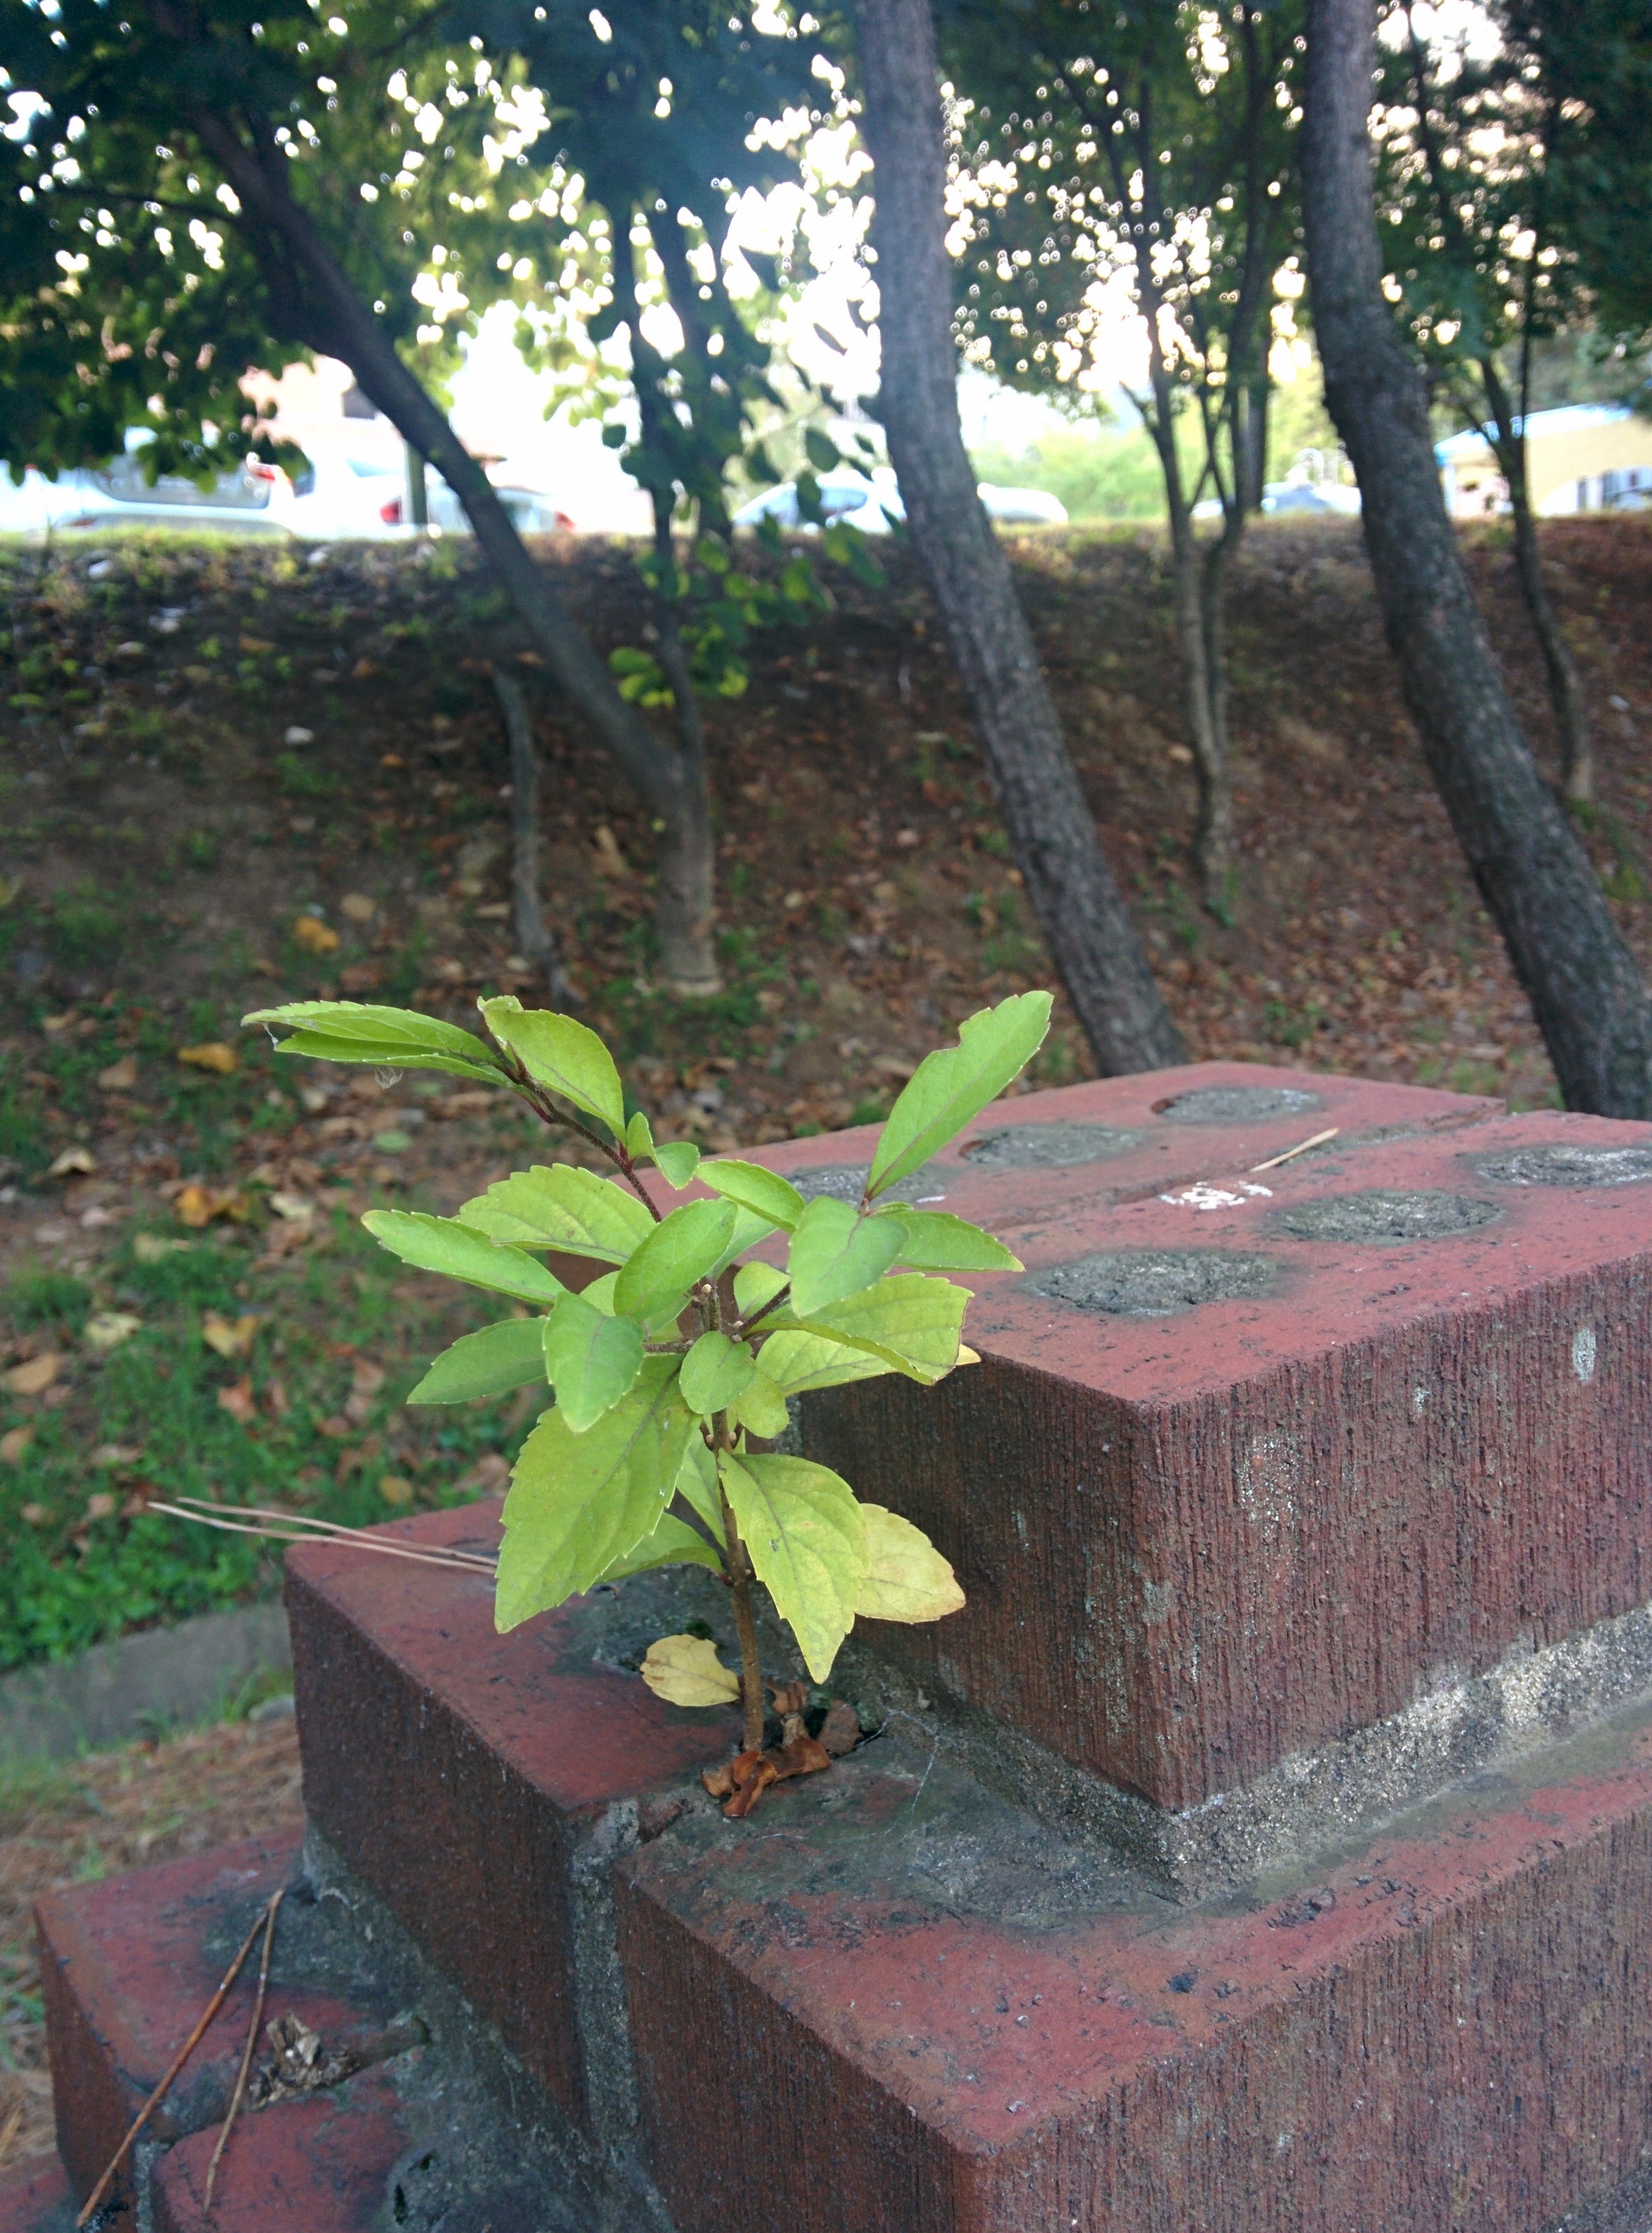 IMG_20151014_172403.jpg 아름다운 생명력... 담장 위에서 자라는 어린 나무 -- 느티나무